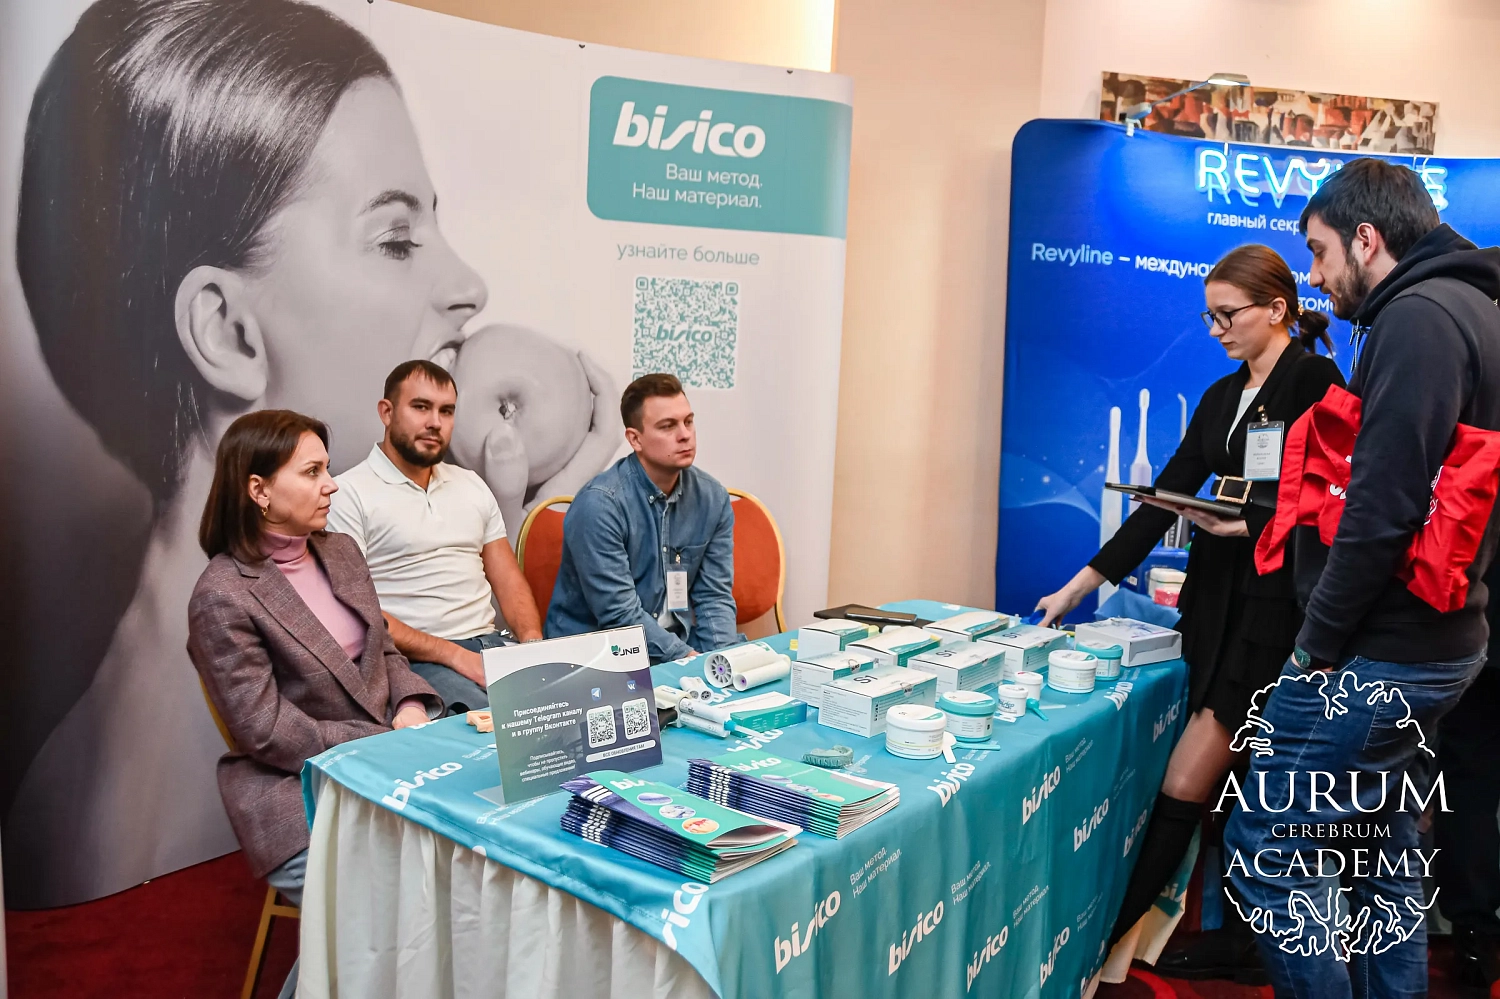 Группа компаний JNB и бренд Bisico стали спонсорами конгресса Aurum